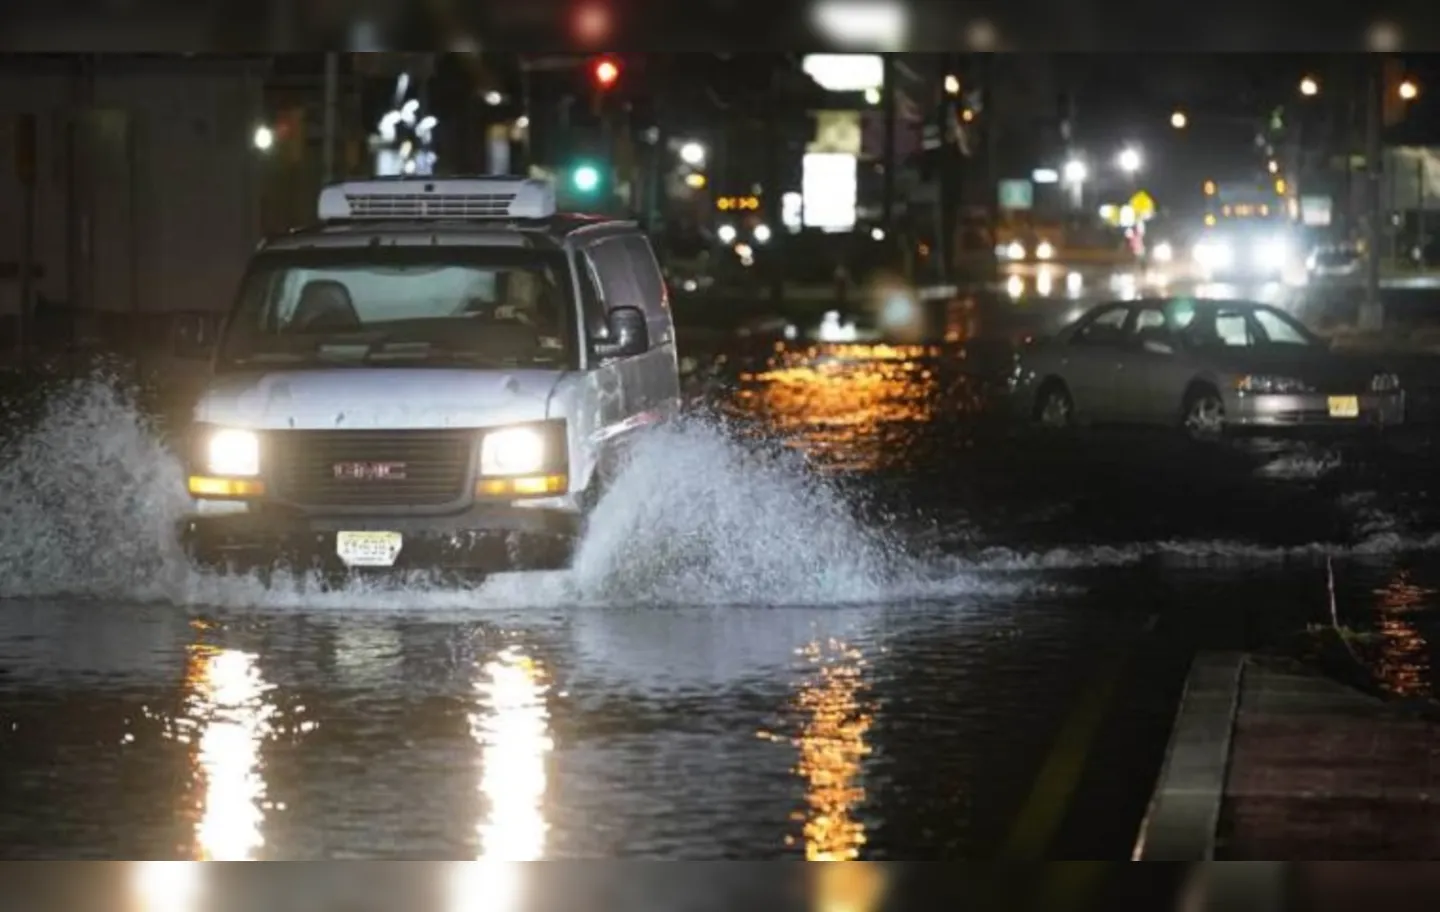 Os efeitos do furacão desencadearam inundações em velocidade recorde em Nova York | Foto: Seth Wenig | AP